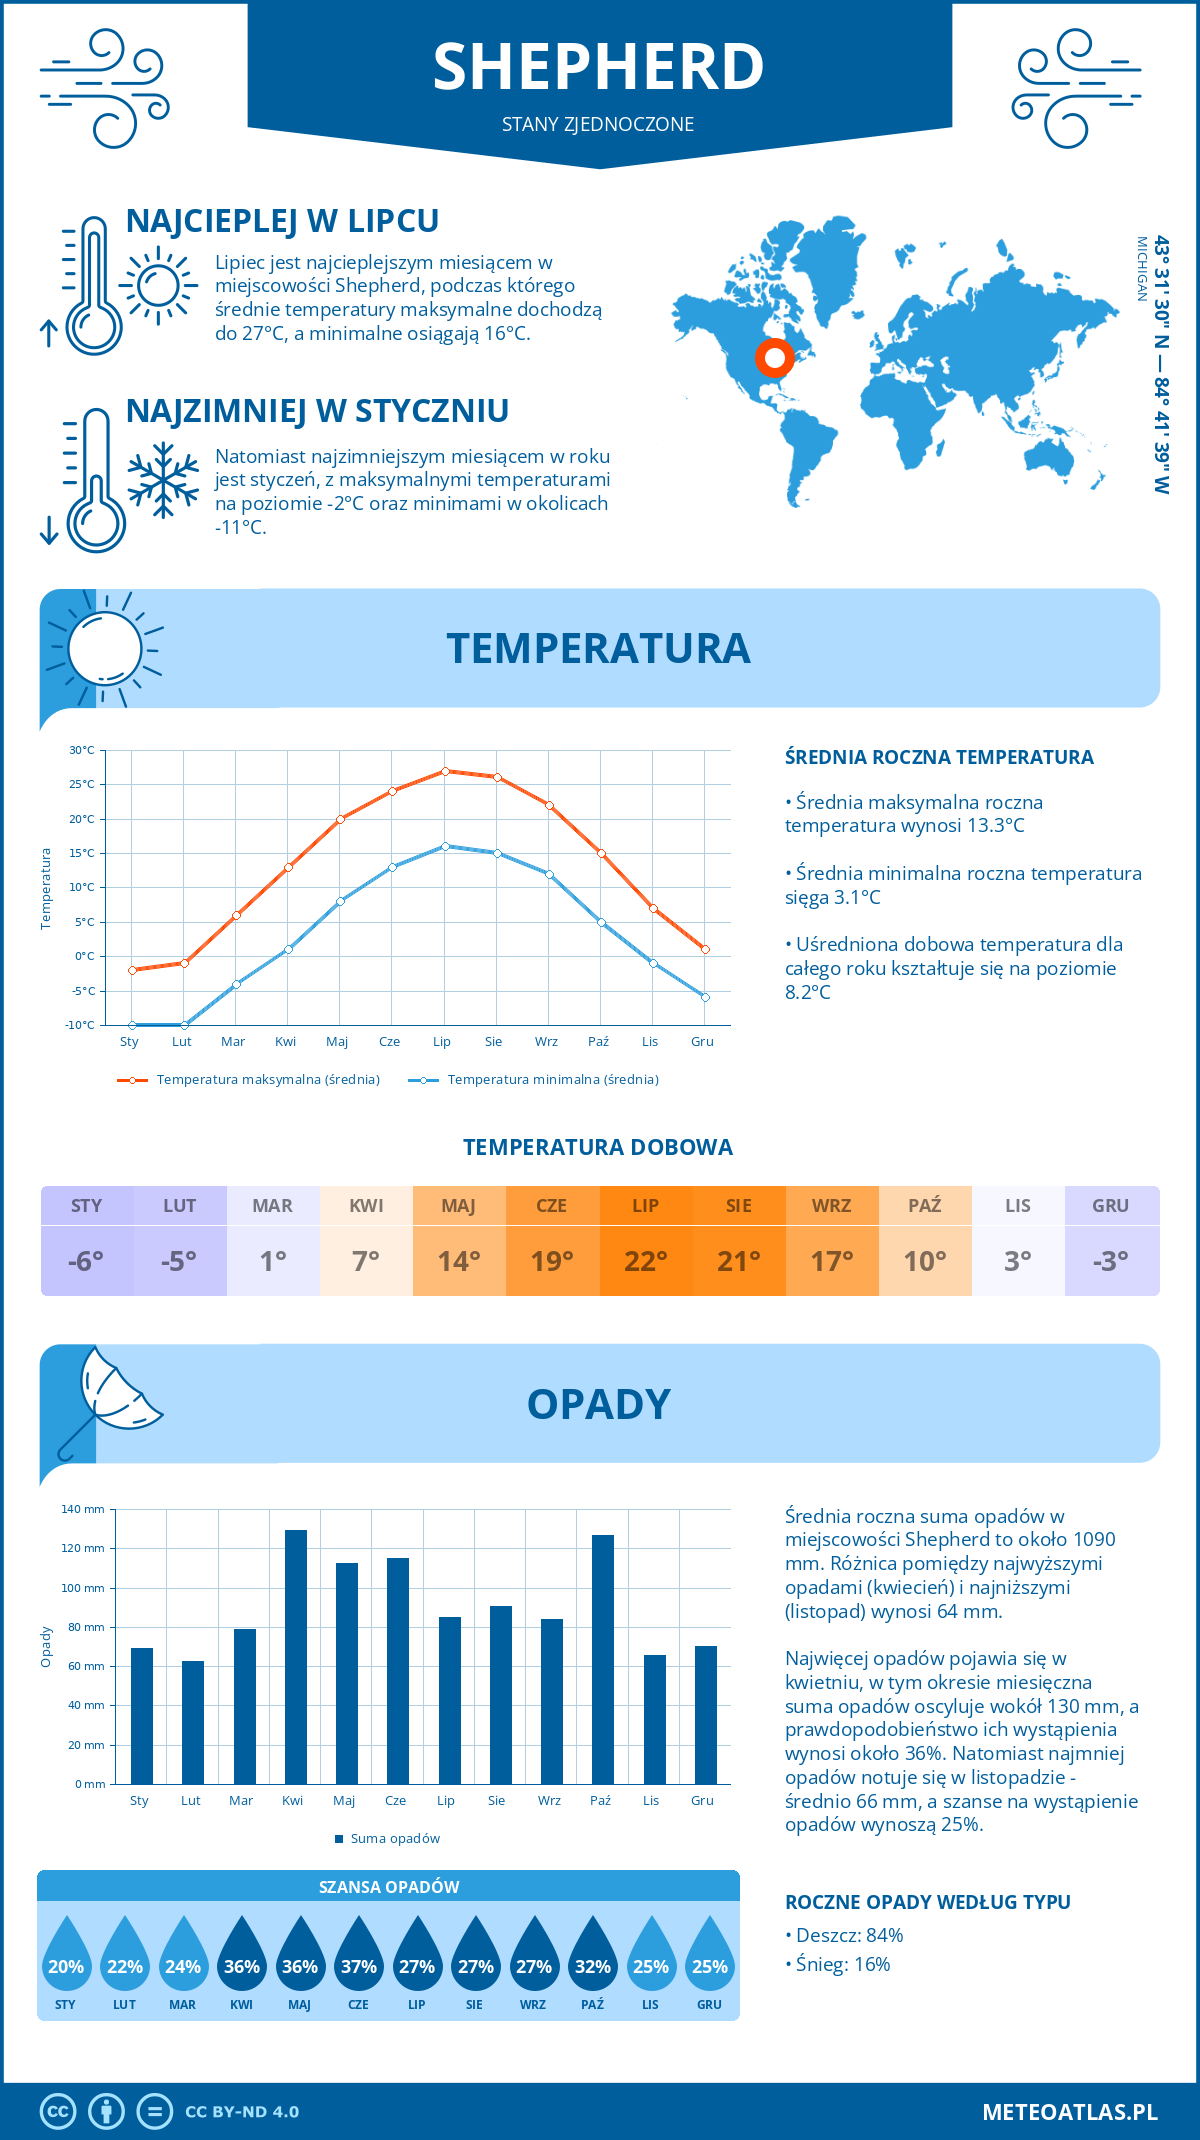 Pogoda Shepherd (Stany Zjednoczone). Temperatura oraz opady.